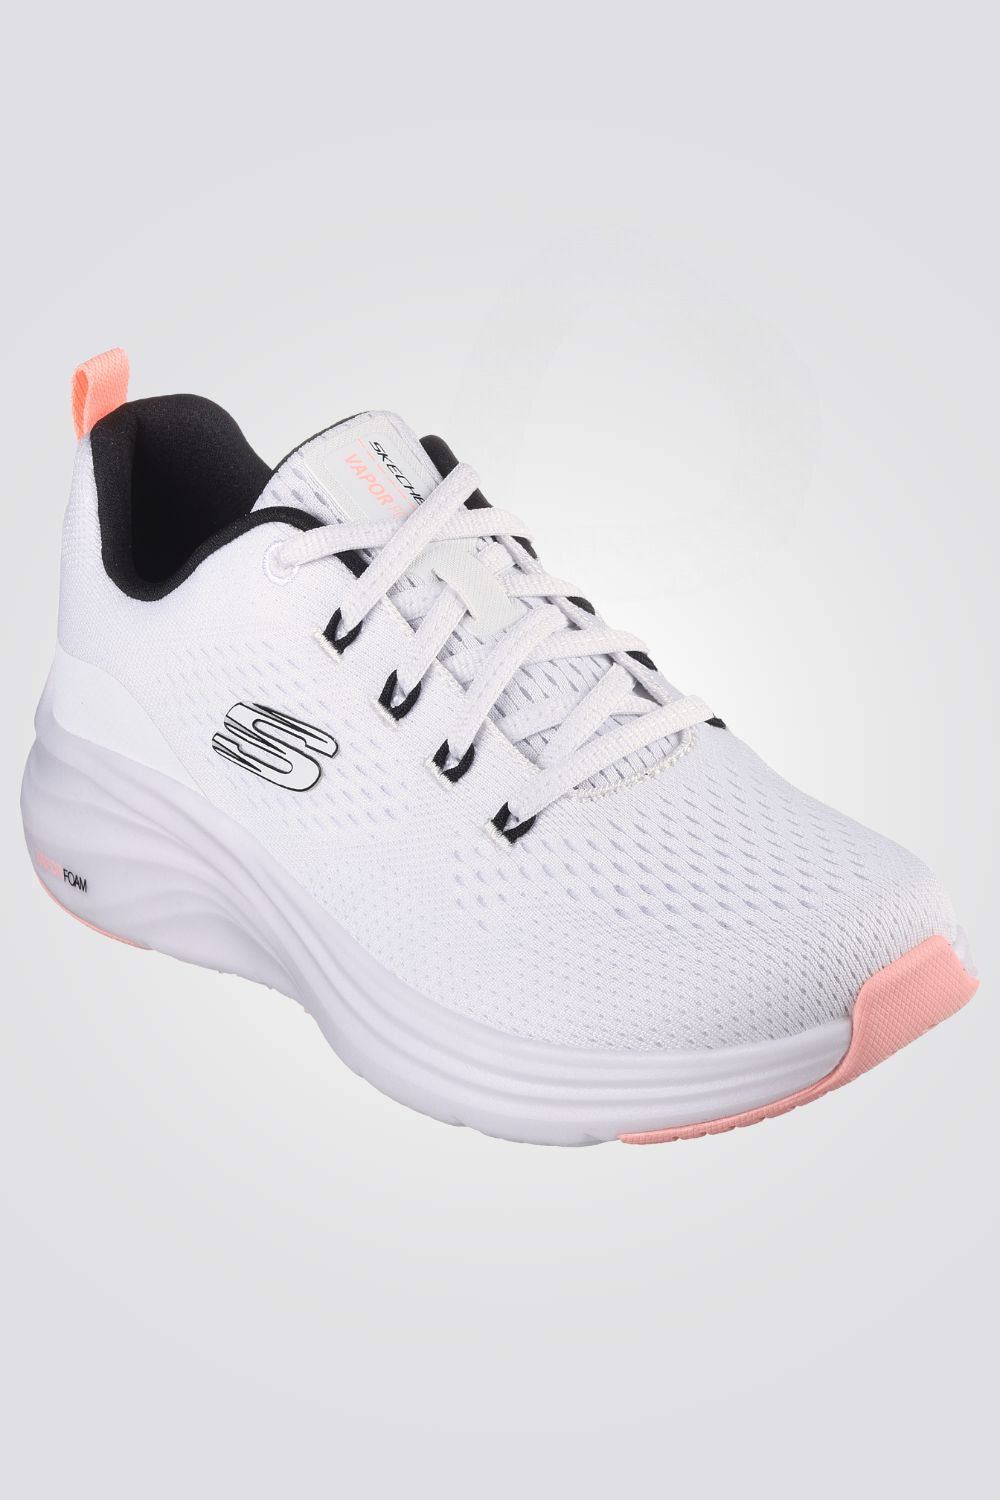 נעלי ספורט לנשים Vapor Foam - Fresh Trend בצבע לבן ורוד ושחור